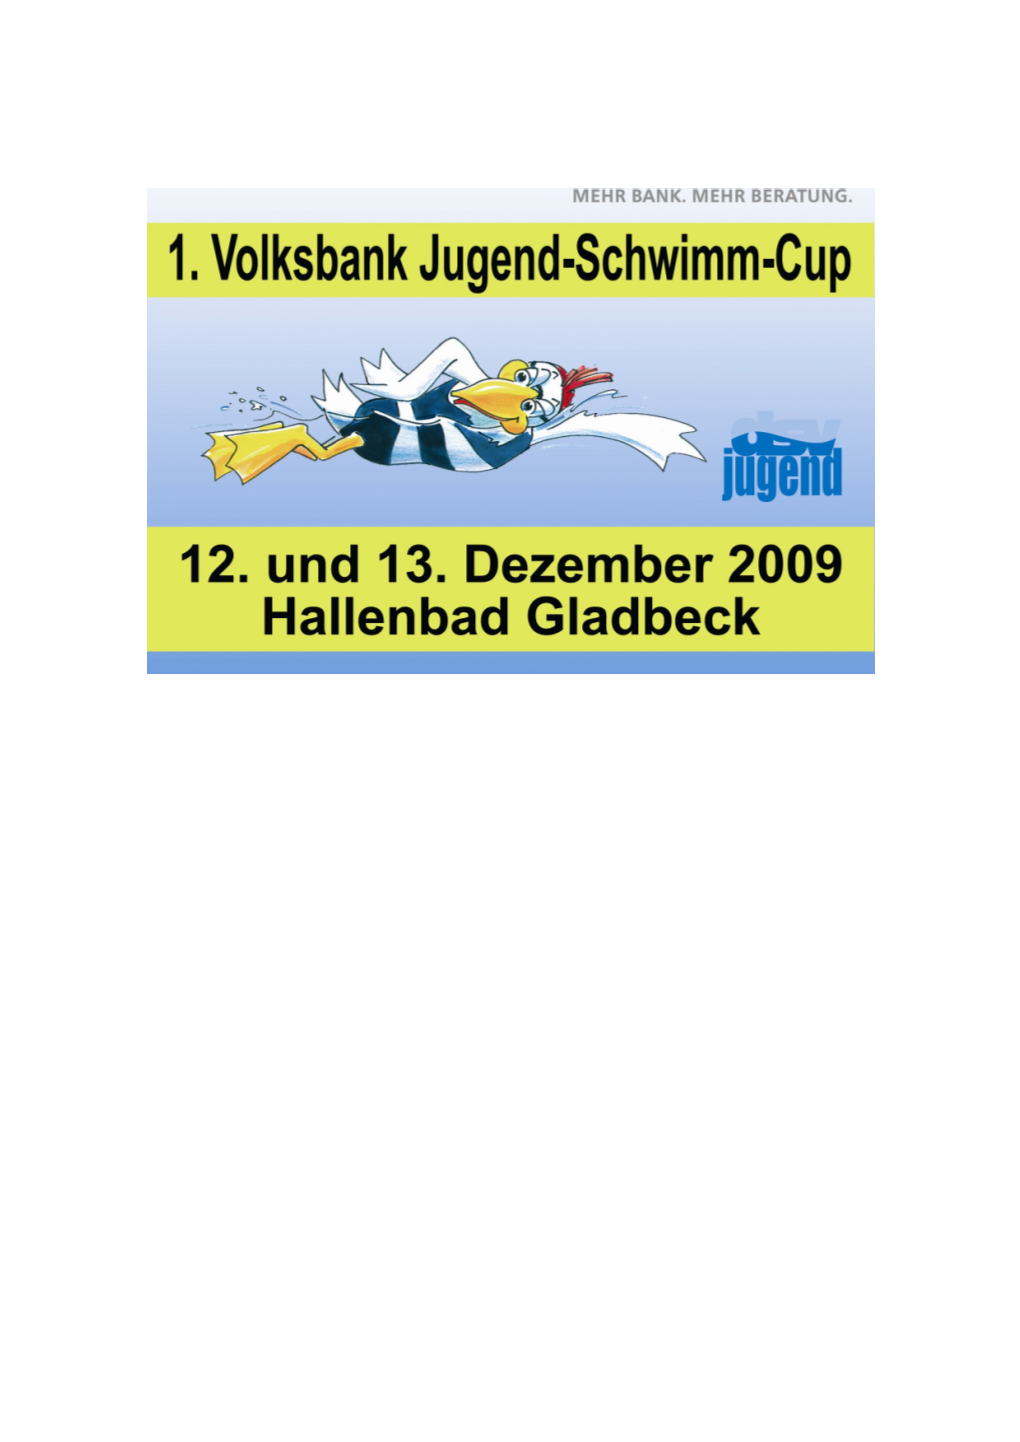 1.Volksbank-Jugend-Schwimm-Cup 2009